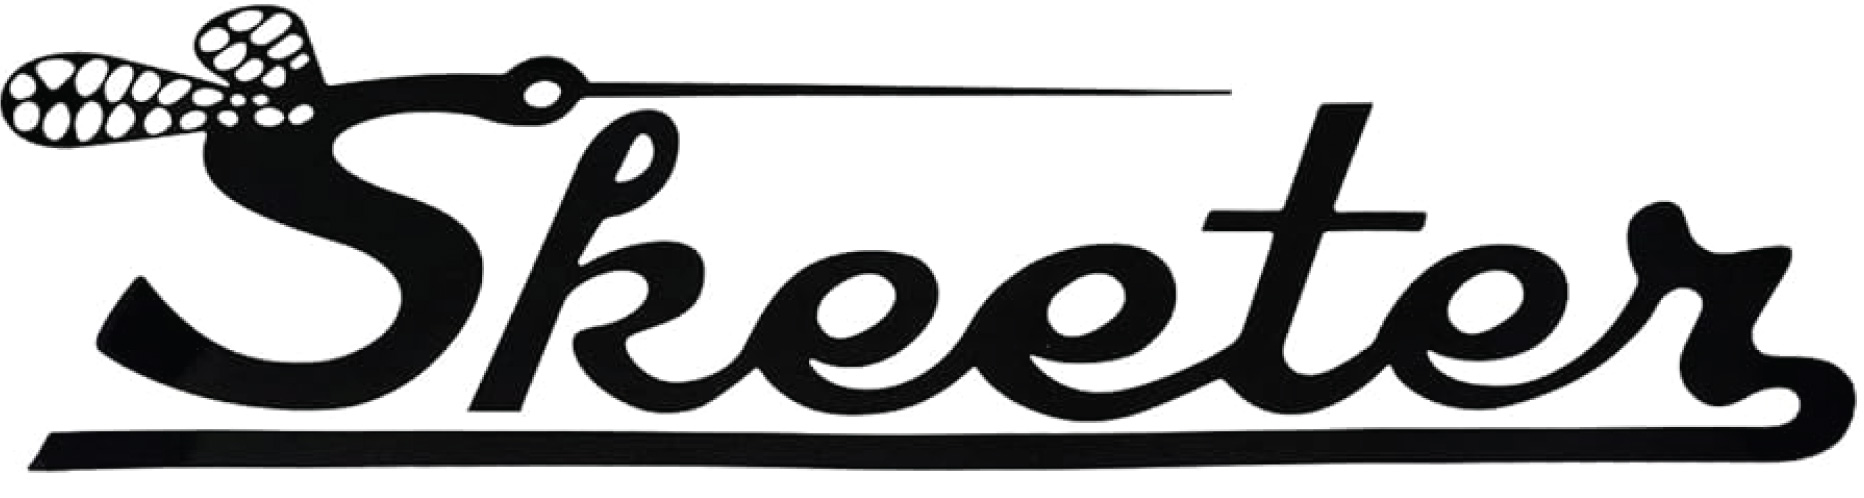 vintage skeeter logo